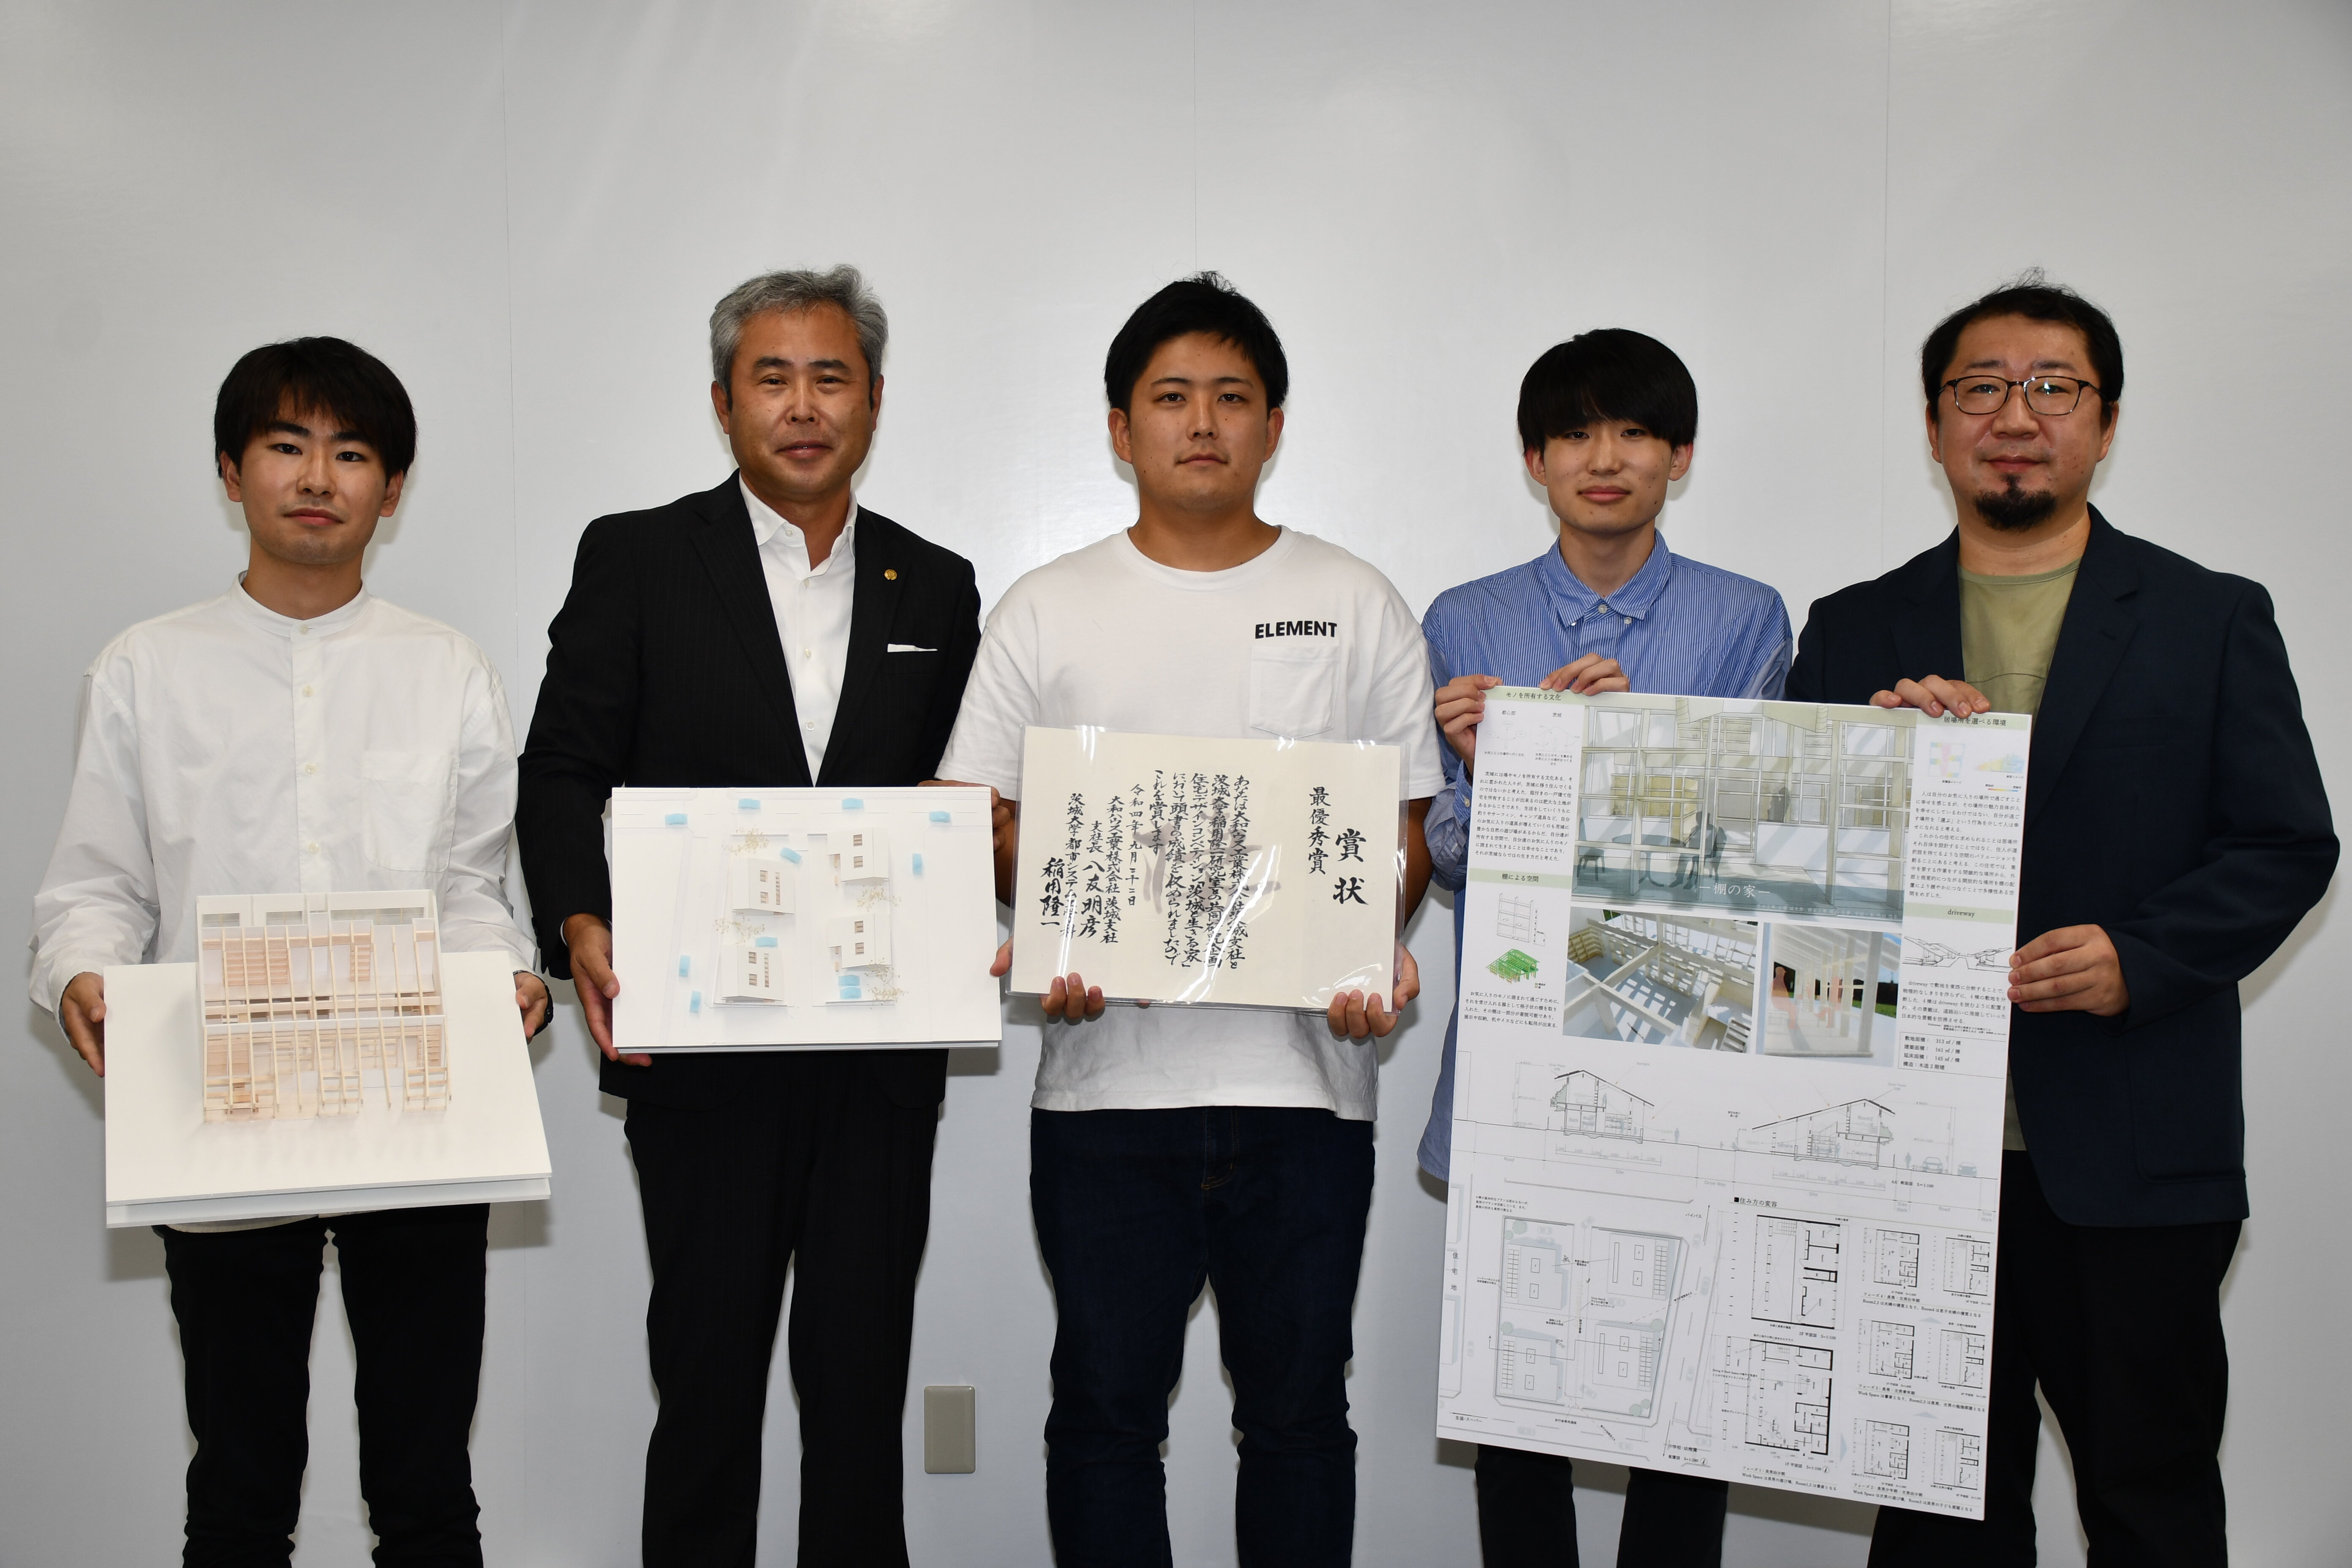 茨城県の地域特性を踏まえた新しい住宅を考える</br>学生対象のデザインコンペティションを開催